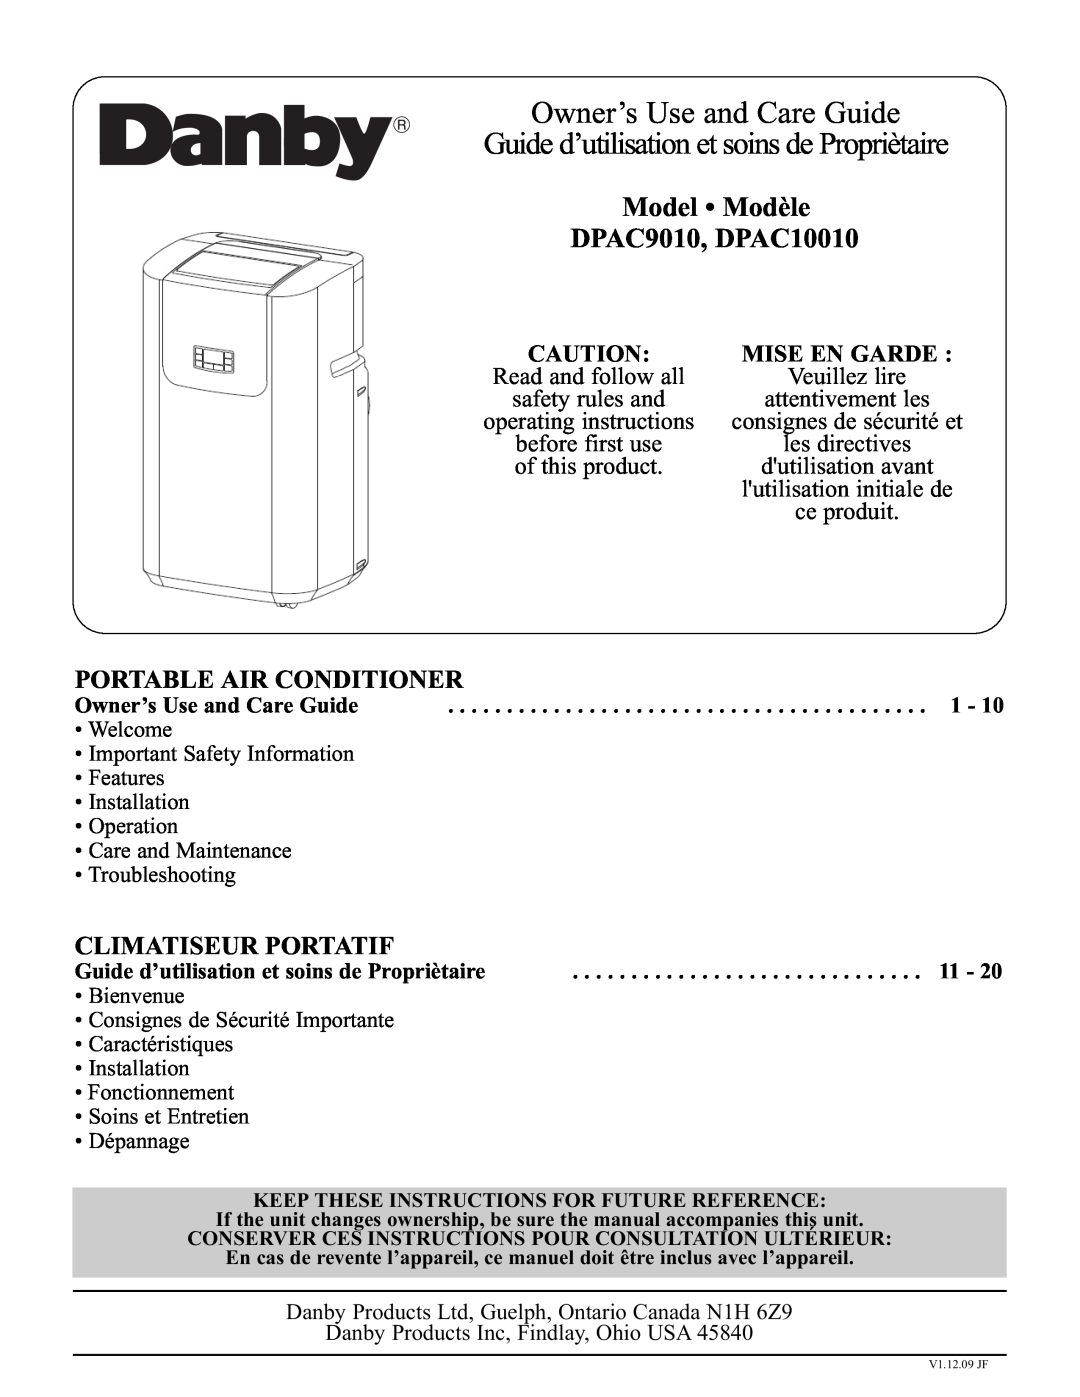 Danby manual Model Modèle DPAC9010, DPAC10010, Portable Air Conditioner, Climatiseur Portatif, Mise En Garde 